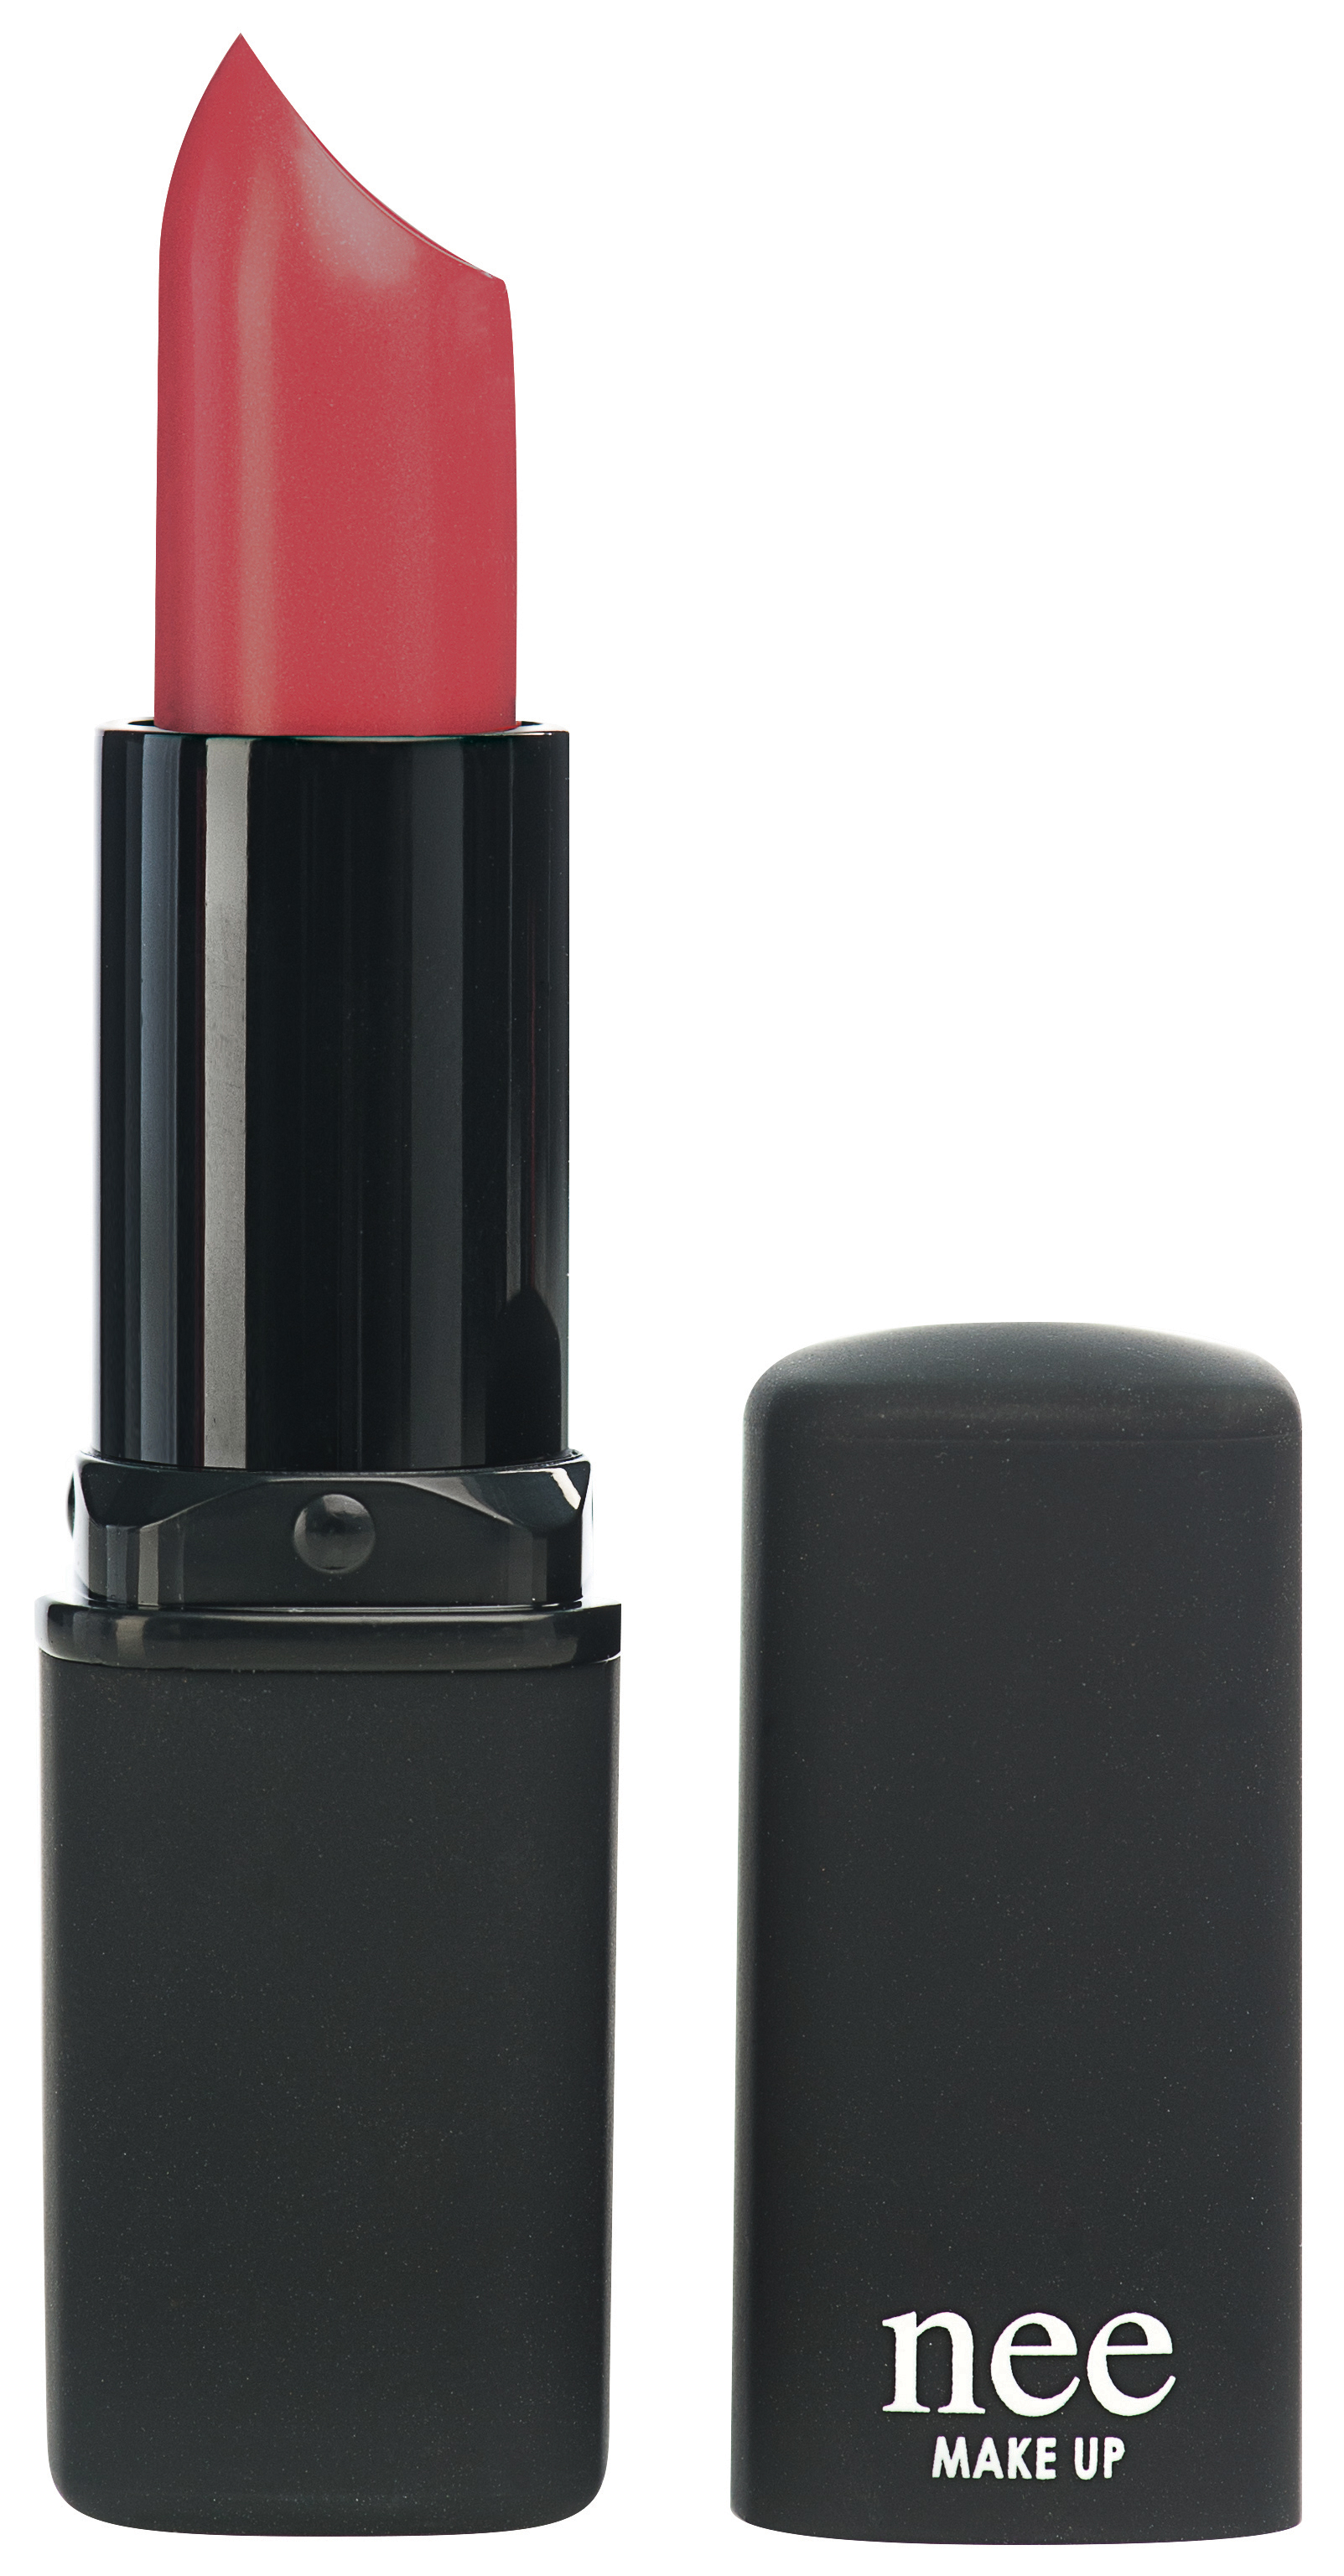 Lipstick analogue pink